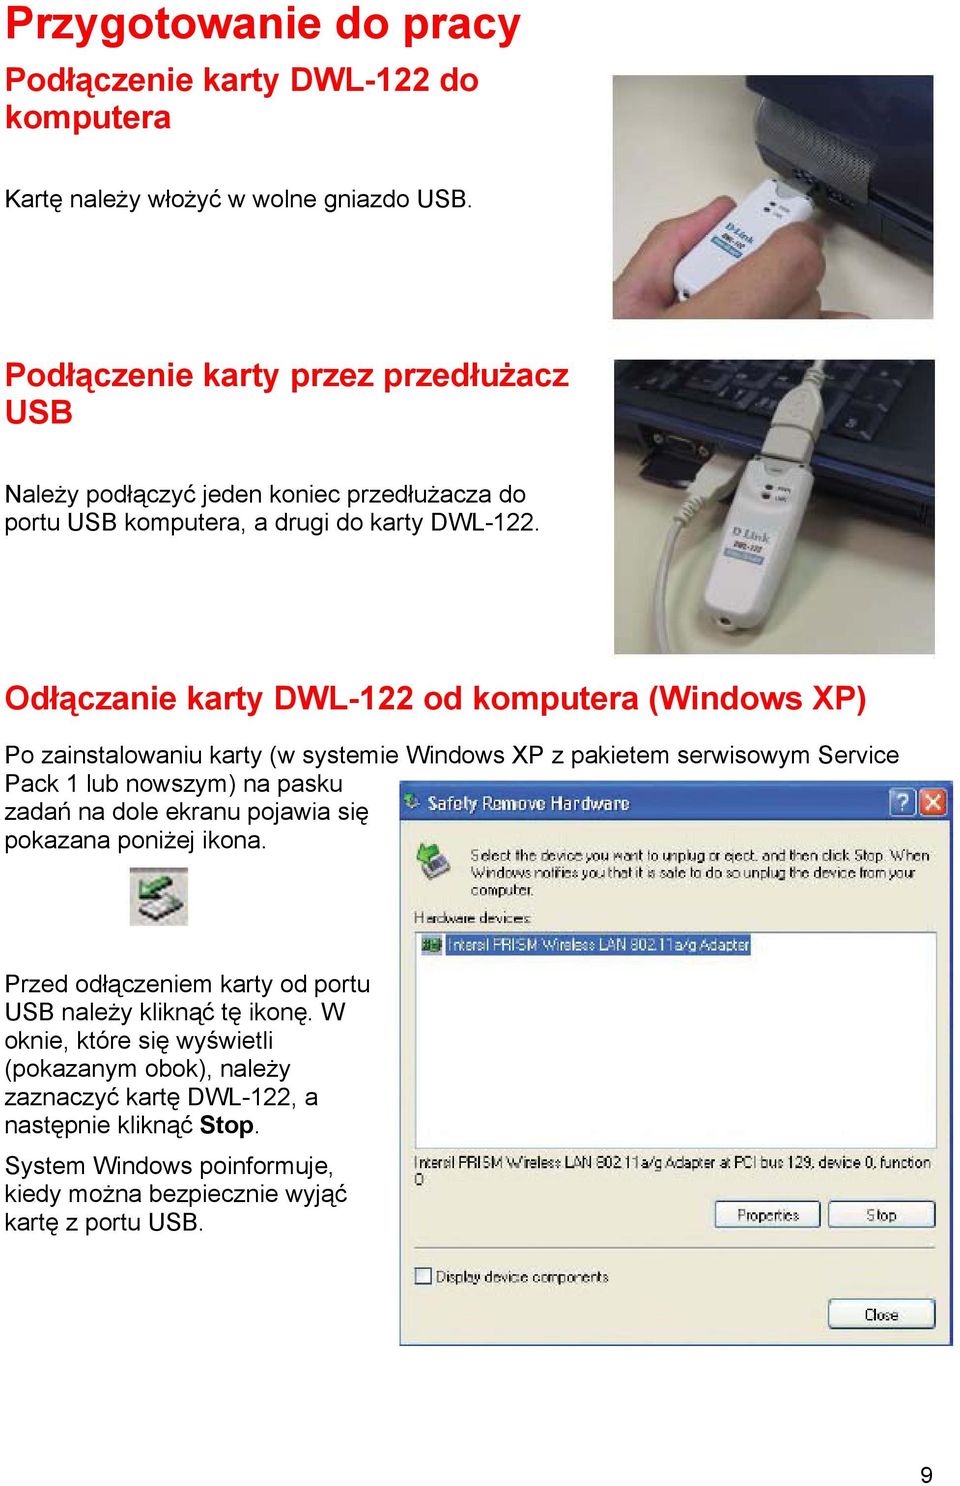 Odłączanie karty DWL-122 od komputera (Windows XP) Po zainstalowaniu karty (w systemie Windows XP z pakietem serwisowym Service Pack 1 lub nowszym) na pasku zadań na dole